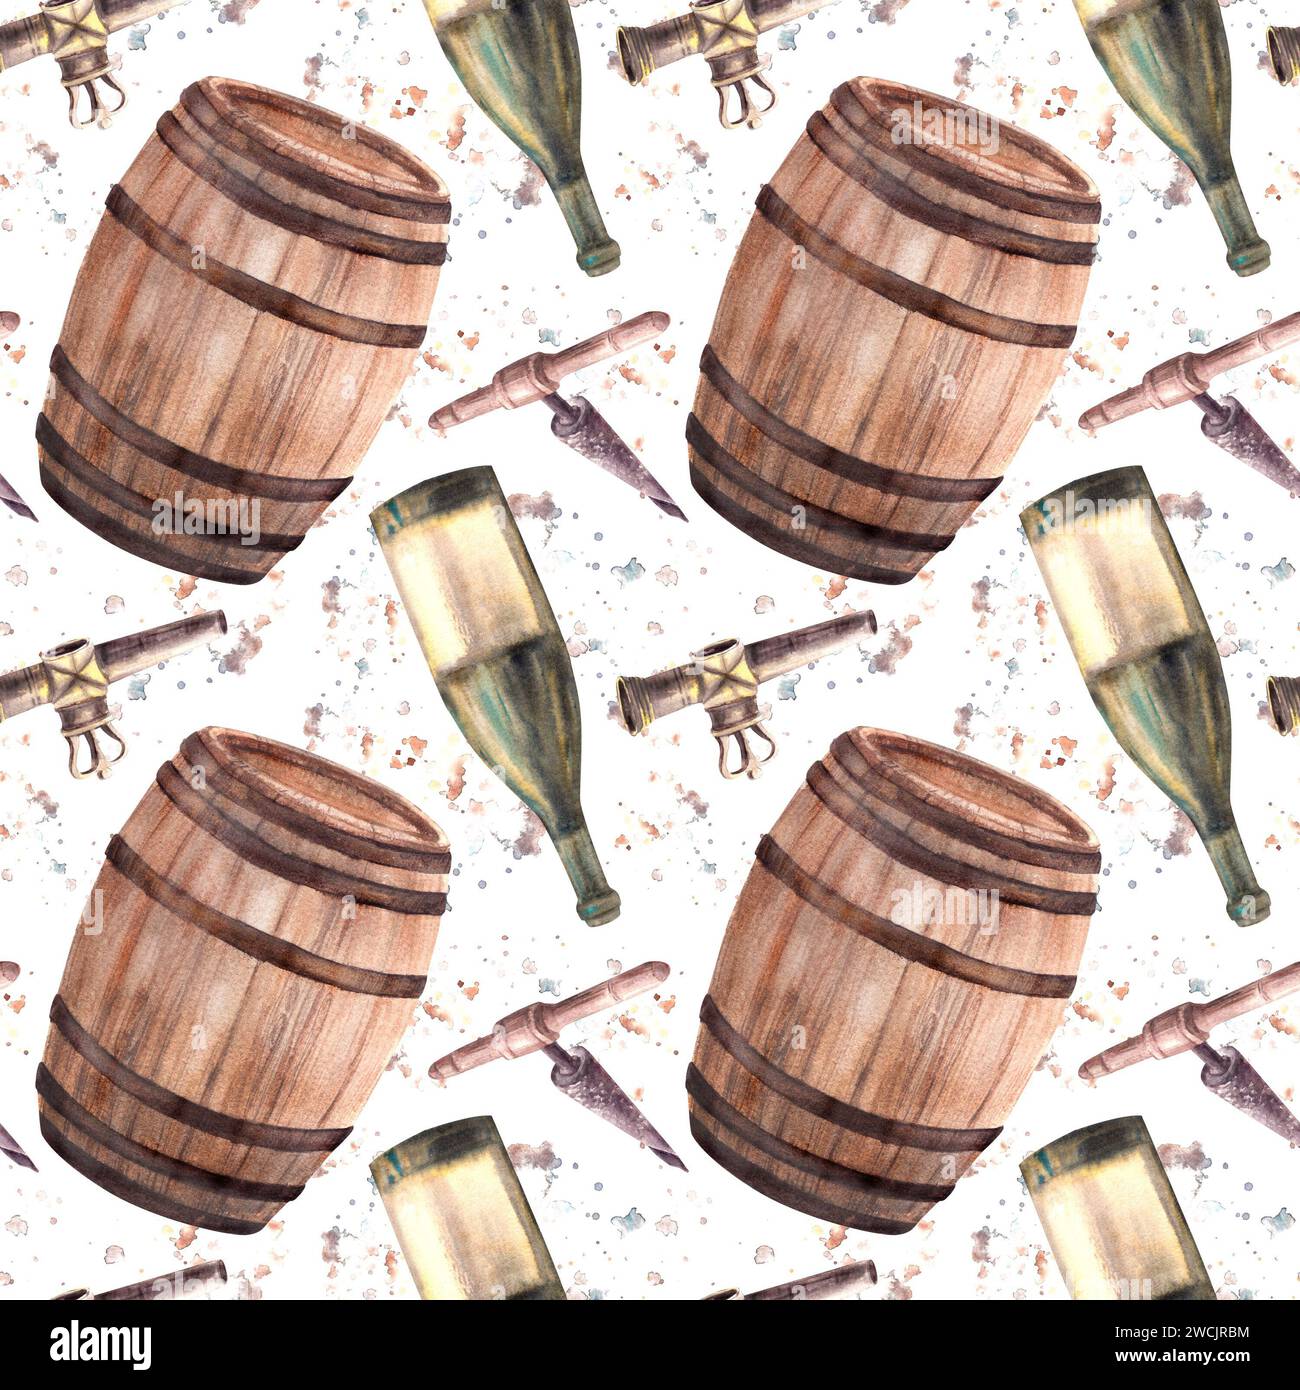 Eine Flasche Weißwein, Holzfässer, Wasserhahn und Korkenzieher mit Aquarellflecken. Nahtloses Muster. Abbildung von Hand. Clipart für die Weinherstellung Stockfoto